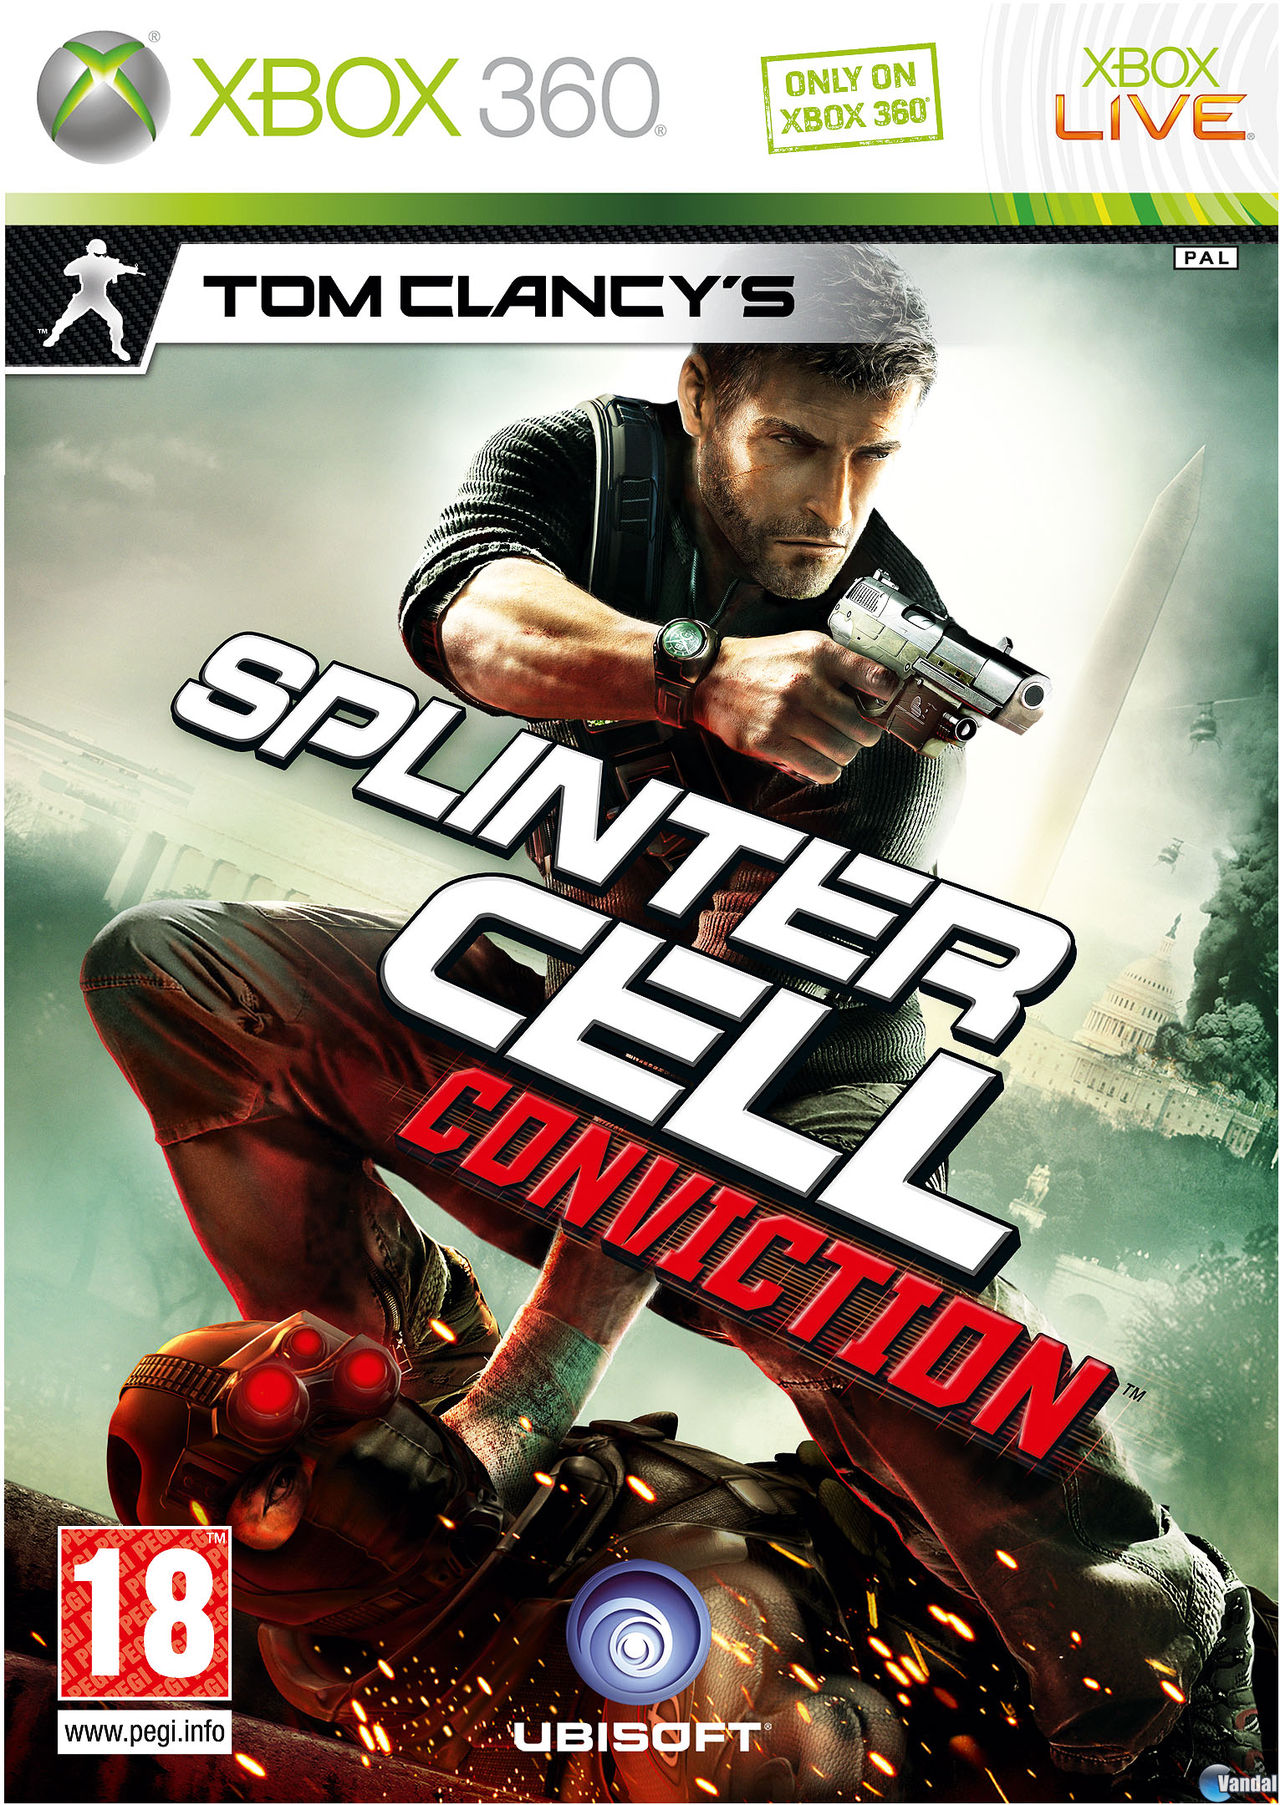 Videogioco Xbox 360 Splinter Cell usate per 9 EUR su Palencia su WALLAPOP